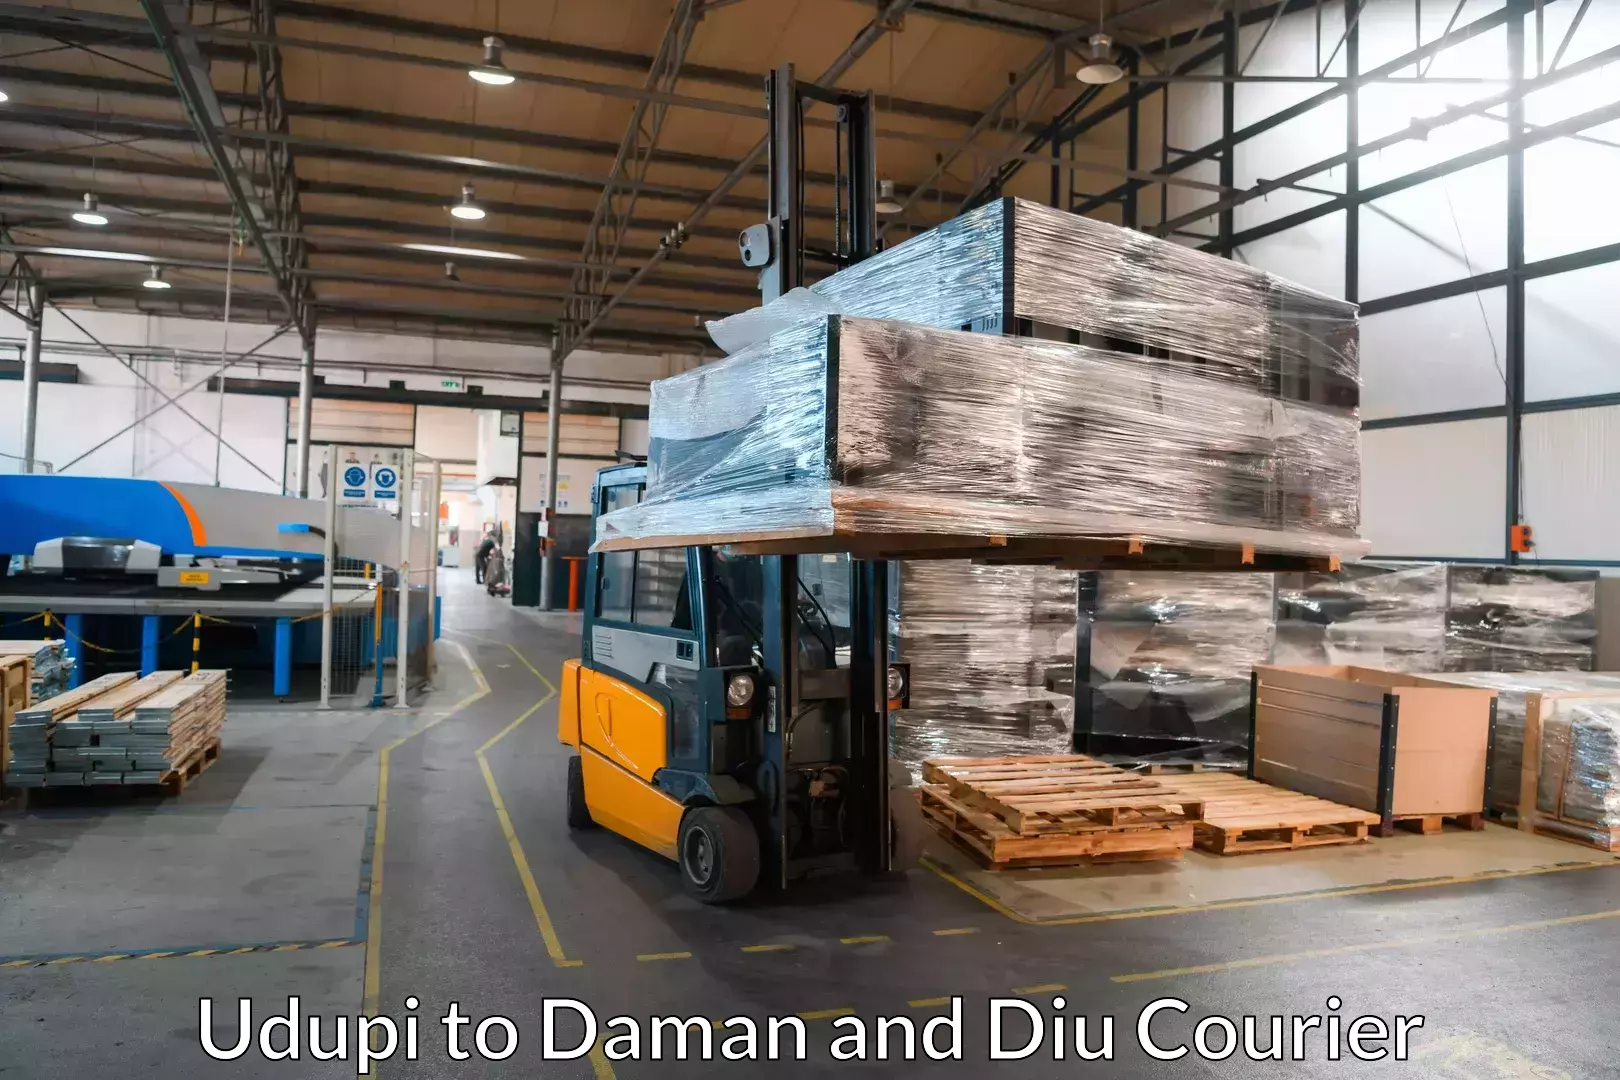 Trusted moving company Udupi to Daman